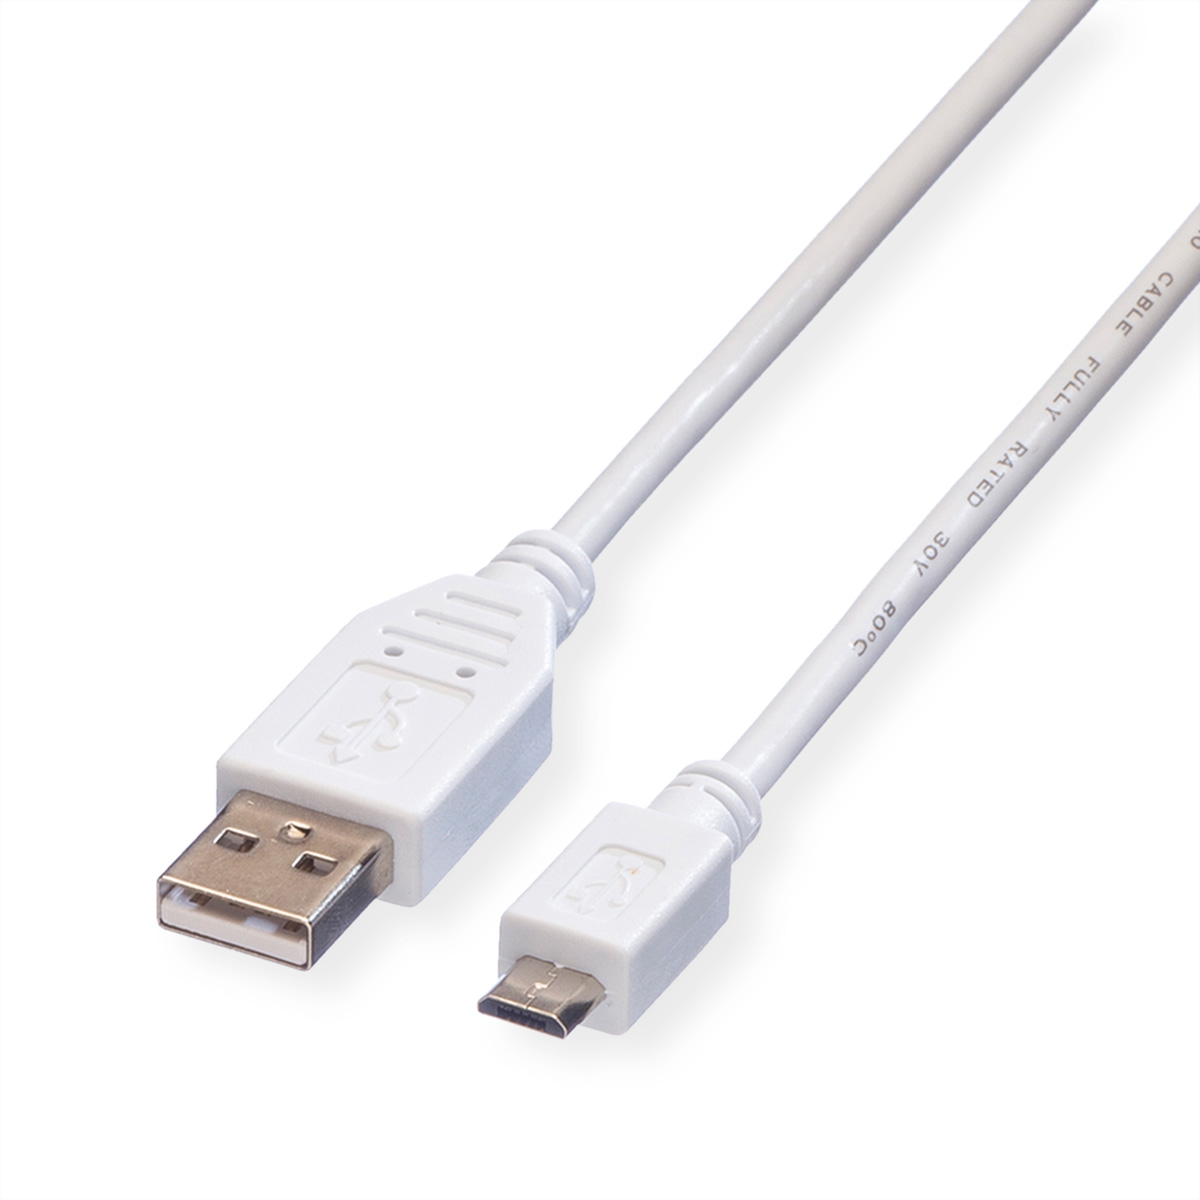 USB 2.0 Kabel Kabel USB 2.0 VALUE Micro